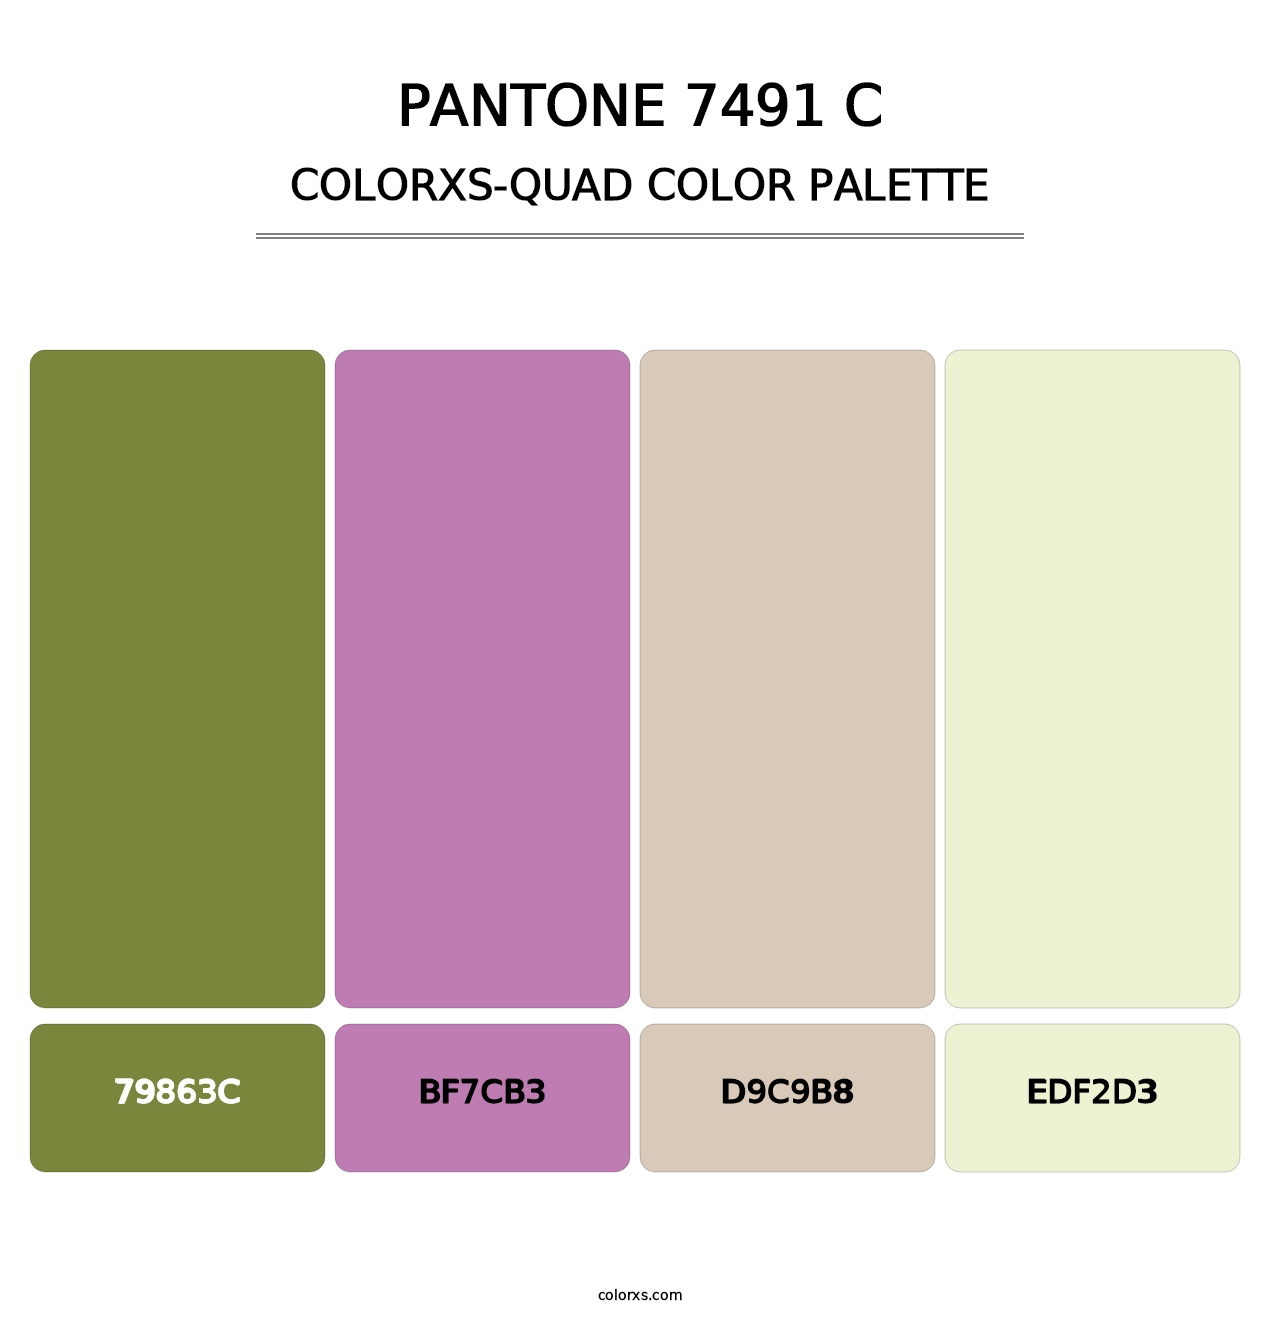 PANTONE 7491 C - Colorxs Quad Palette